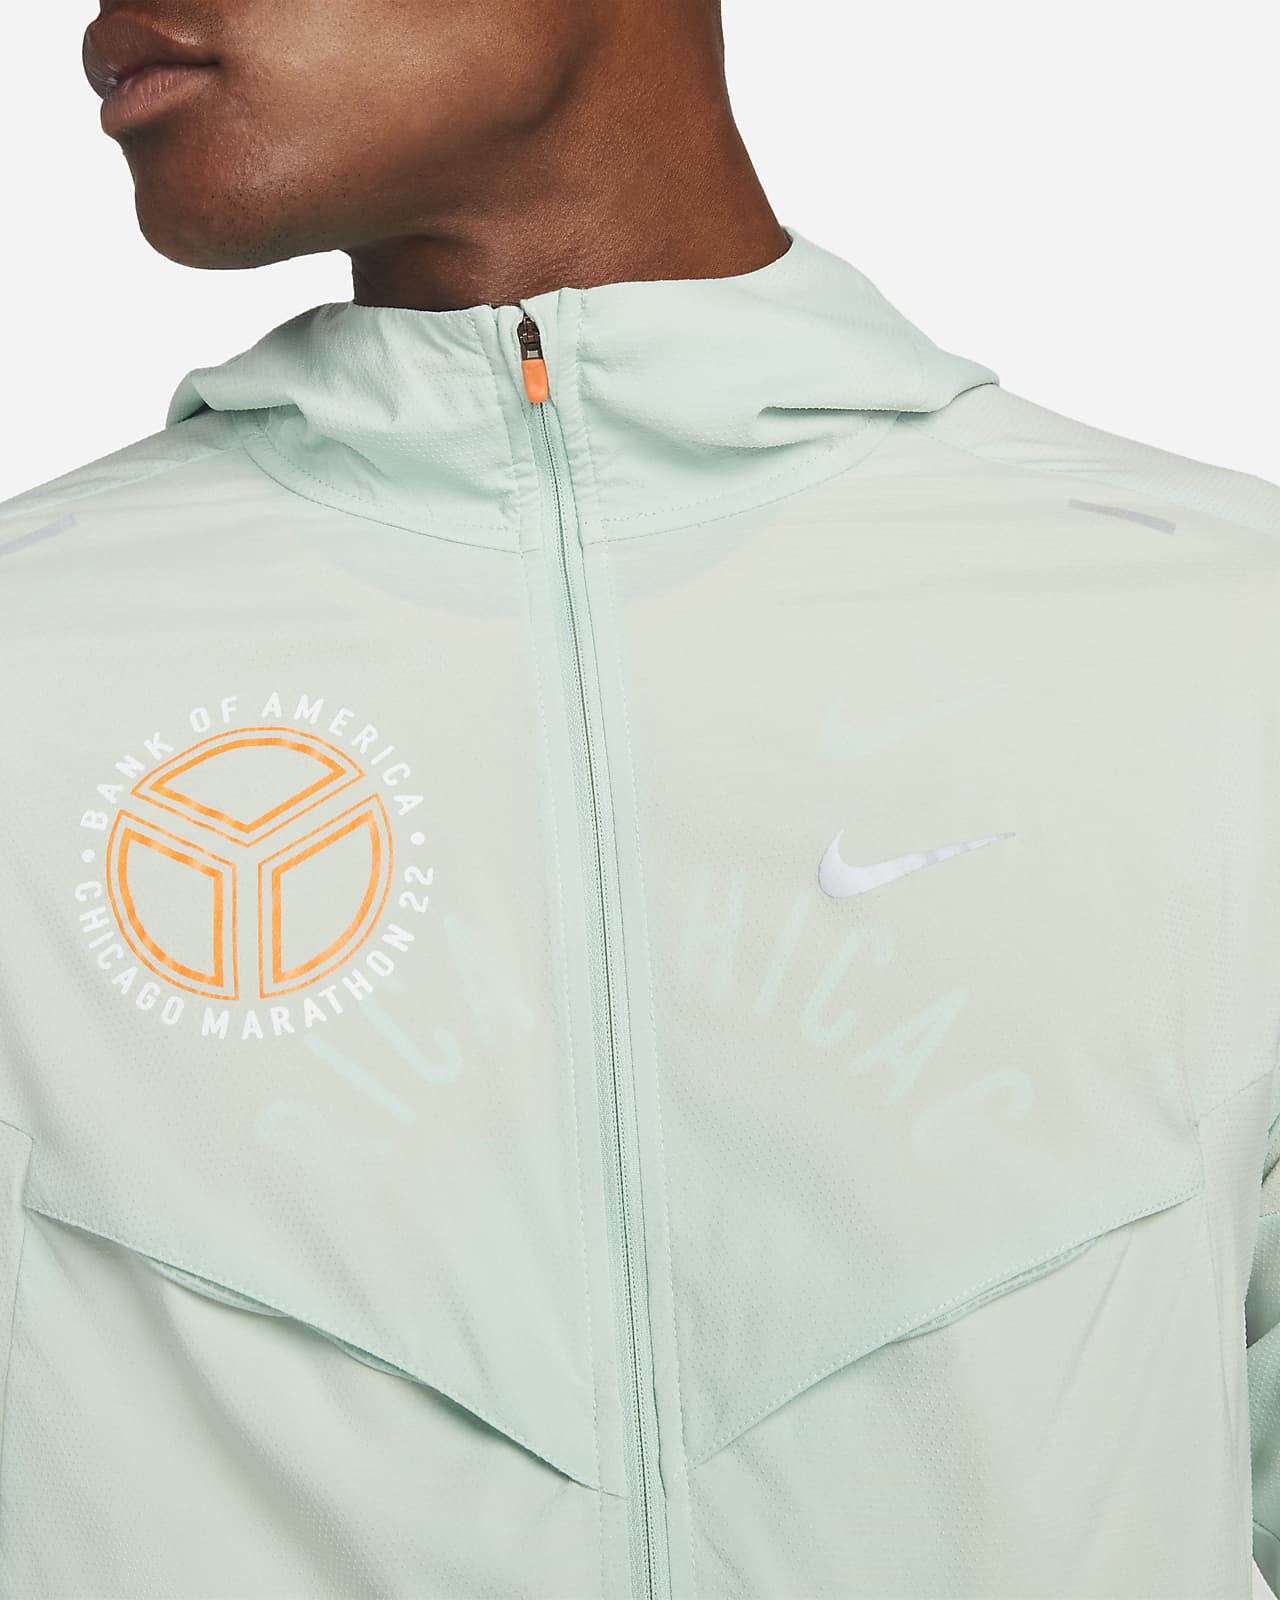 Nike Repel Windrunner Men's UV Running Jacket